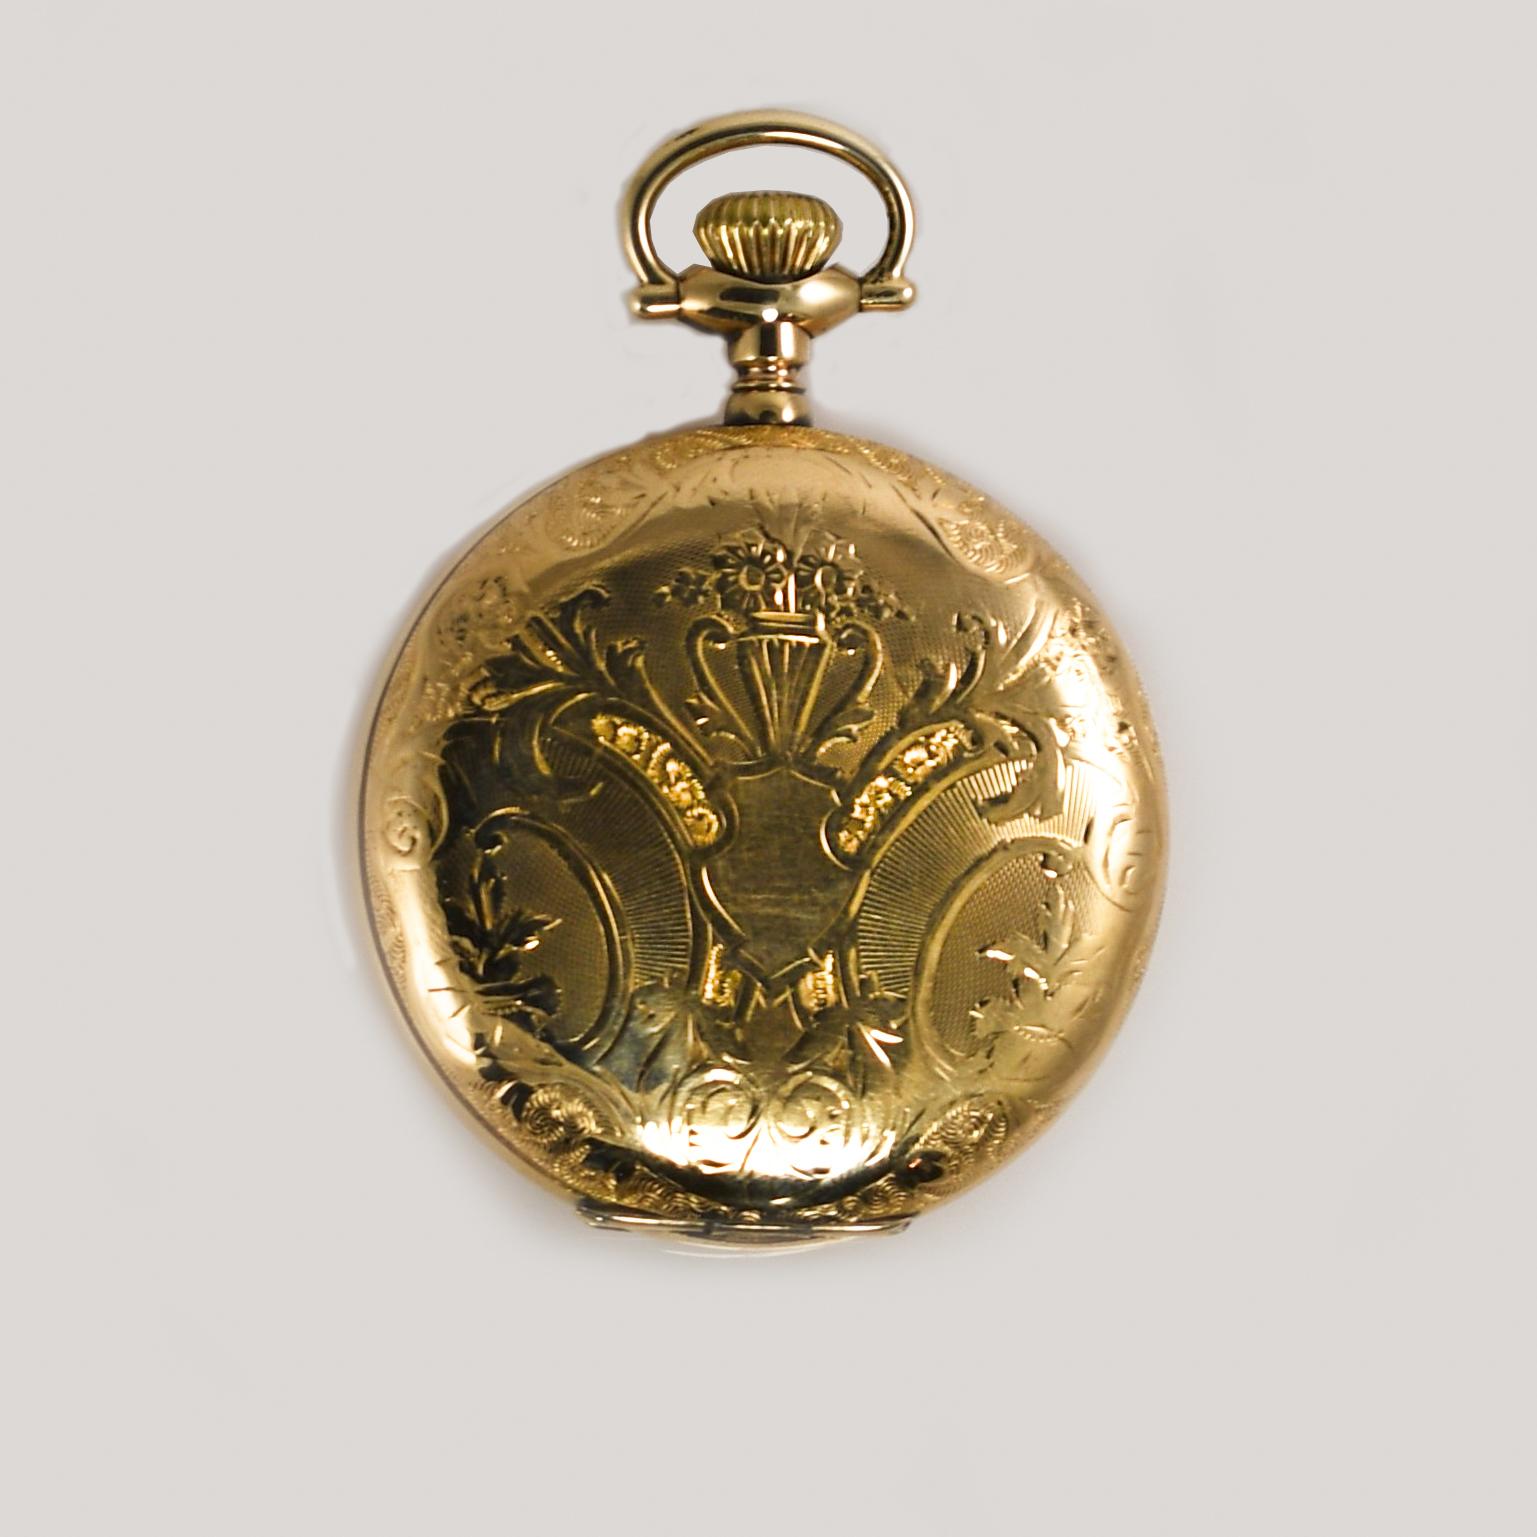 Hamilton Goldgefüllte Taschenuhr, 21 Juwelen, Größe 16

Hamilton Gold gefüllt Taschenuhr mit Jagd Fall.
Klasse 971, Größe 16, 3/4-Platte, 21 Steine, 5 Positionen eingestellt.
Die Seriennummer lautet 399502, hergestellt im Jahr 1904.
Auf der